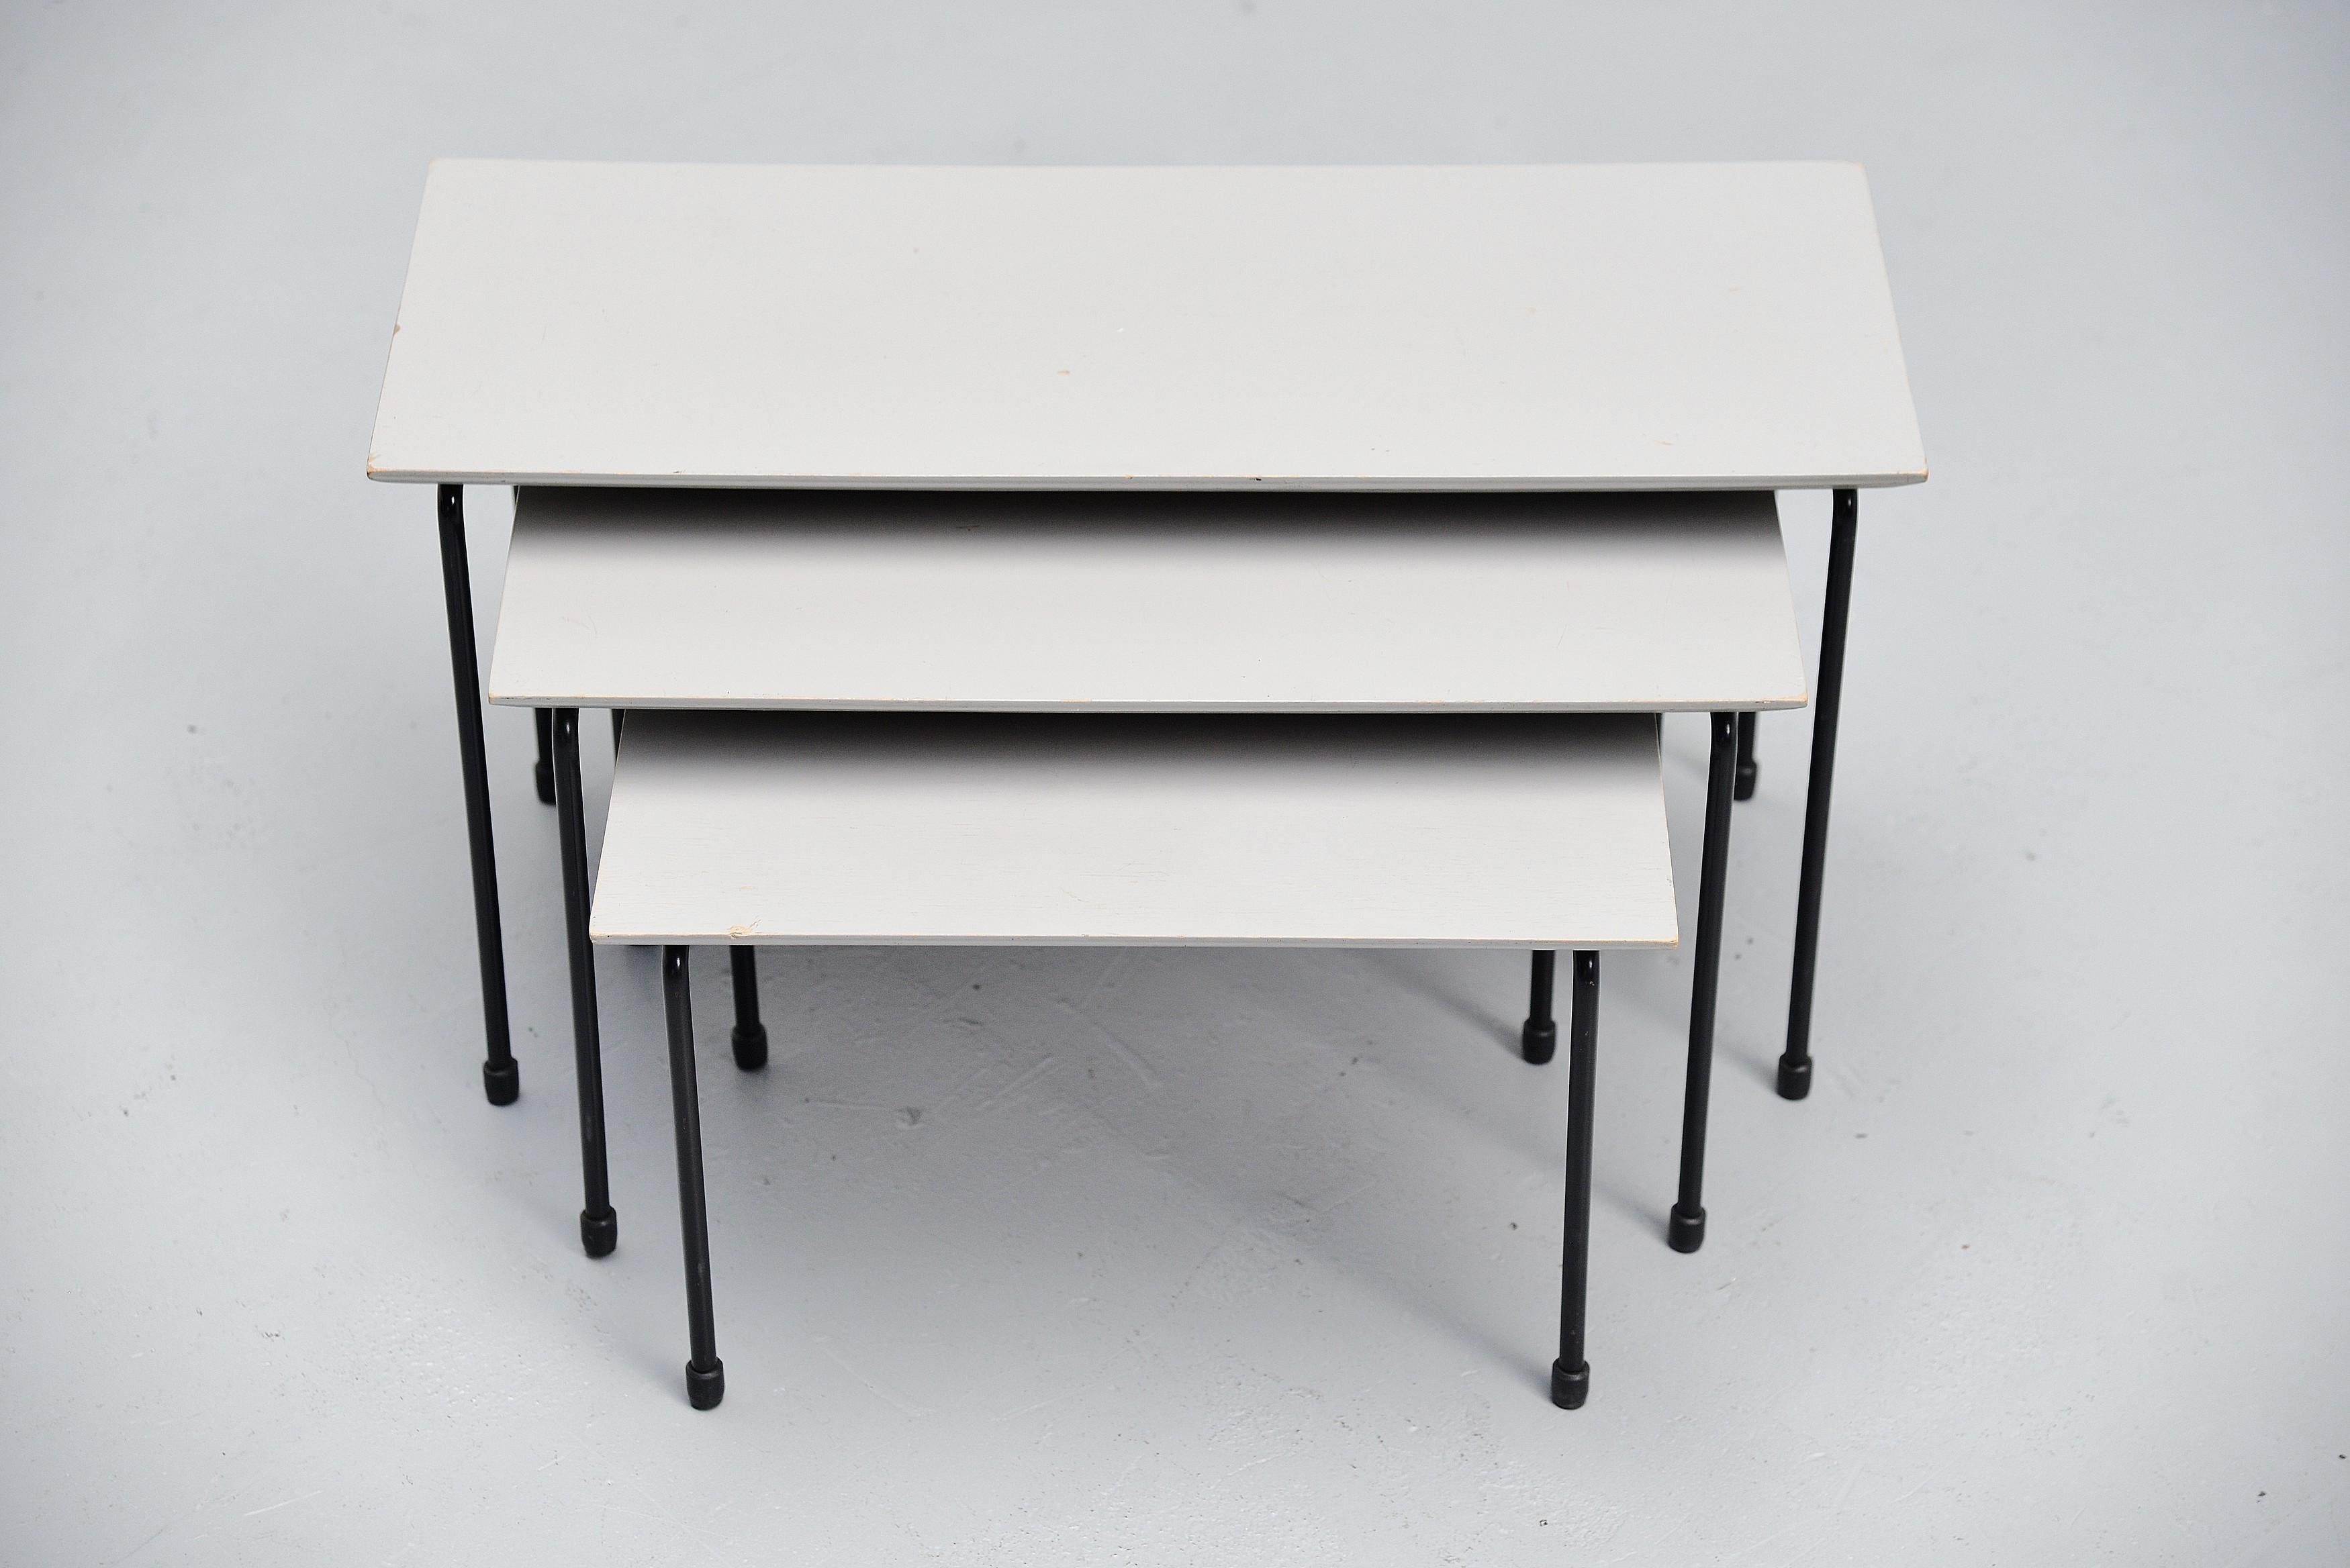 Rare ensemble de tables gigognes modernistes conçu par Martin Visser et fabriqué par 't Spectrum, Hollande 1956. Ce rare ensemble de tables gigognes est issu de la première production en 1956, il n'a été produit que jusqu'en 1957. Les tables ont de